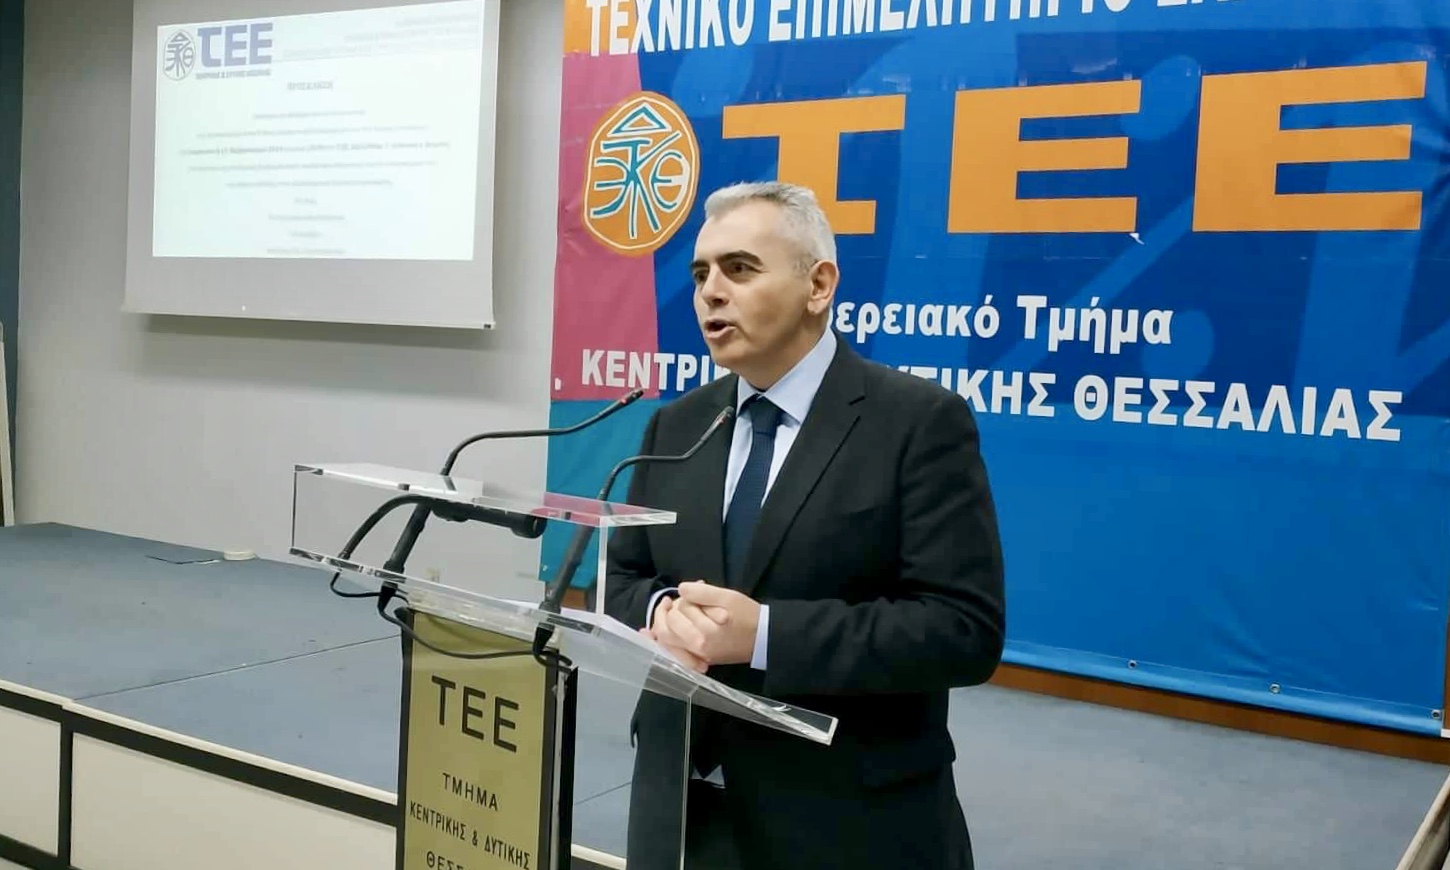 Χαρακόπουλος στο ΤΕΕ: Με ΝΔ θα πάρει μπρος η οικοδομή!